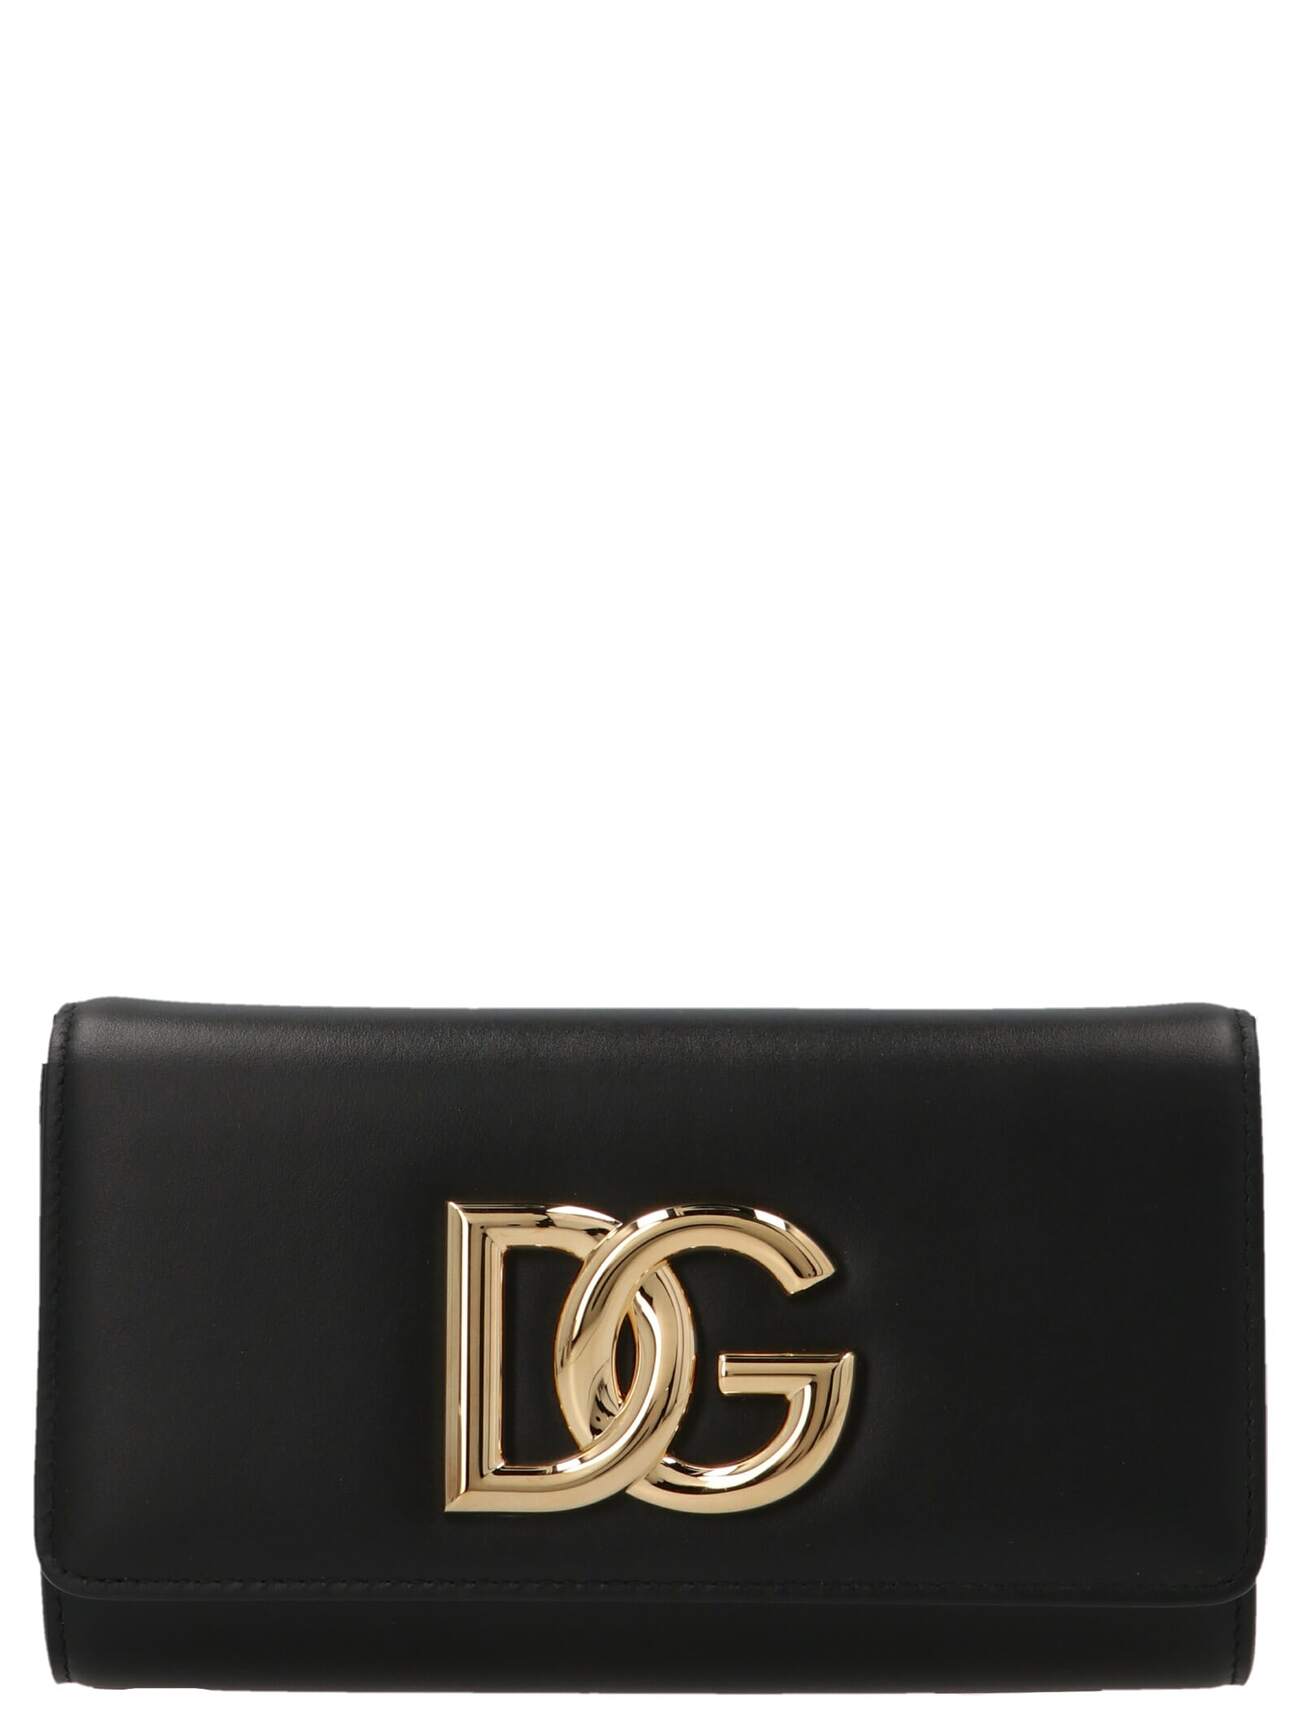 Dolce & Gabbana 3.5 Clutch in black